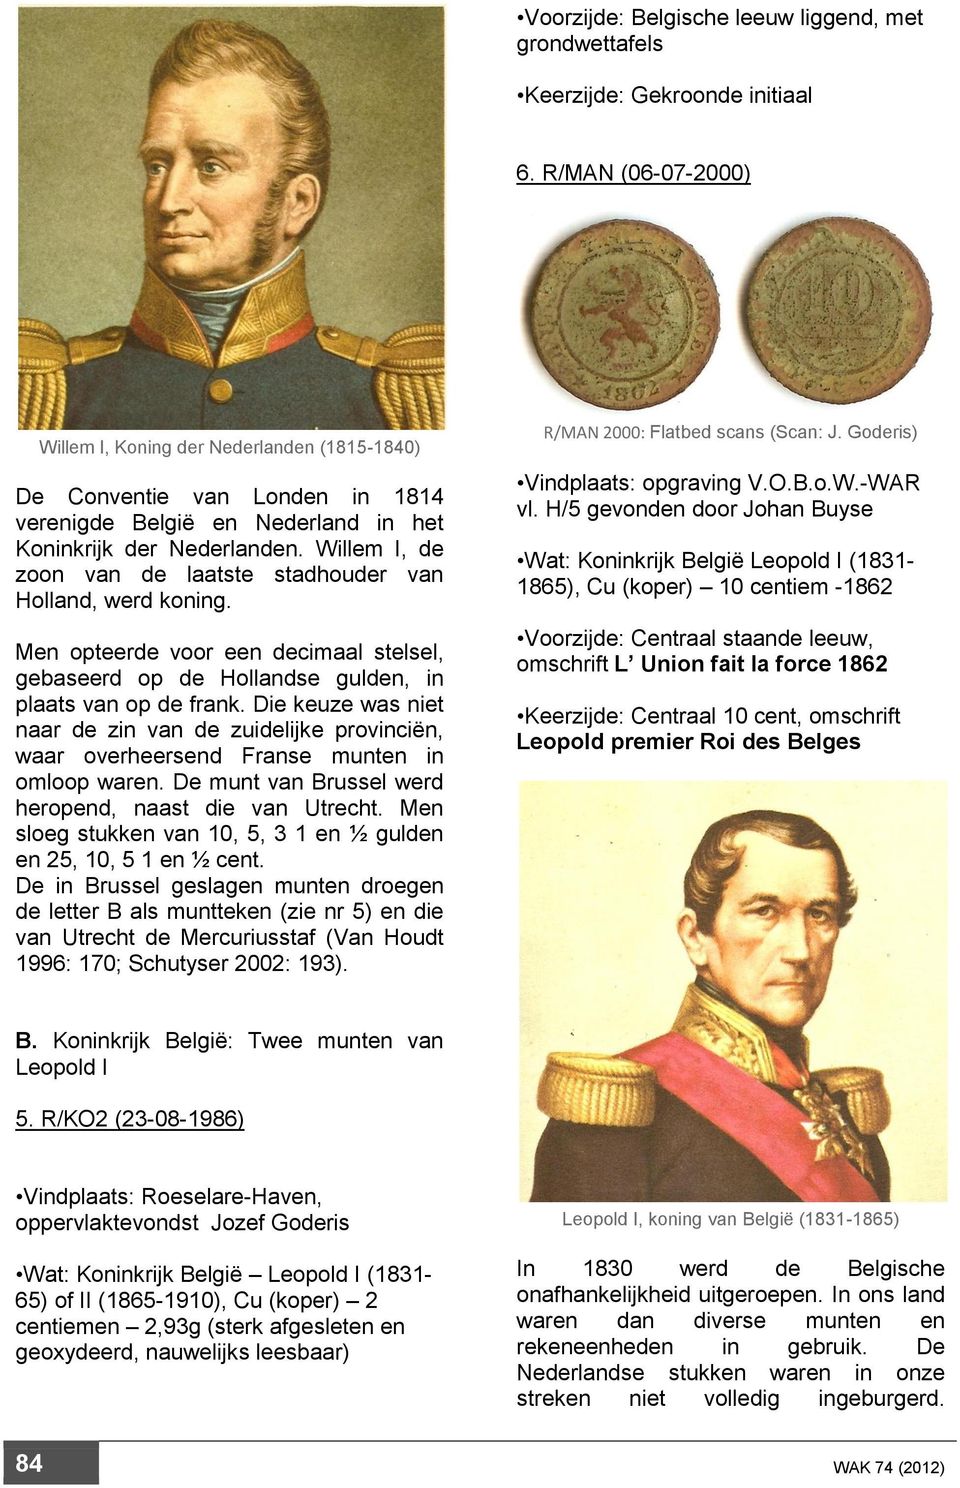 Willem I, de zoon van de laatste stadhouder van Holland, werd koning. Men opteerde voor een decimaal stelsel, gebaseerd op de Hollandse gulden, in plaats van op de frank.